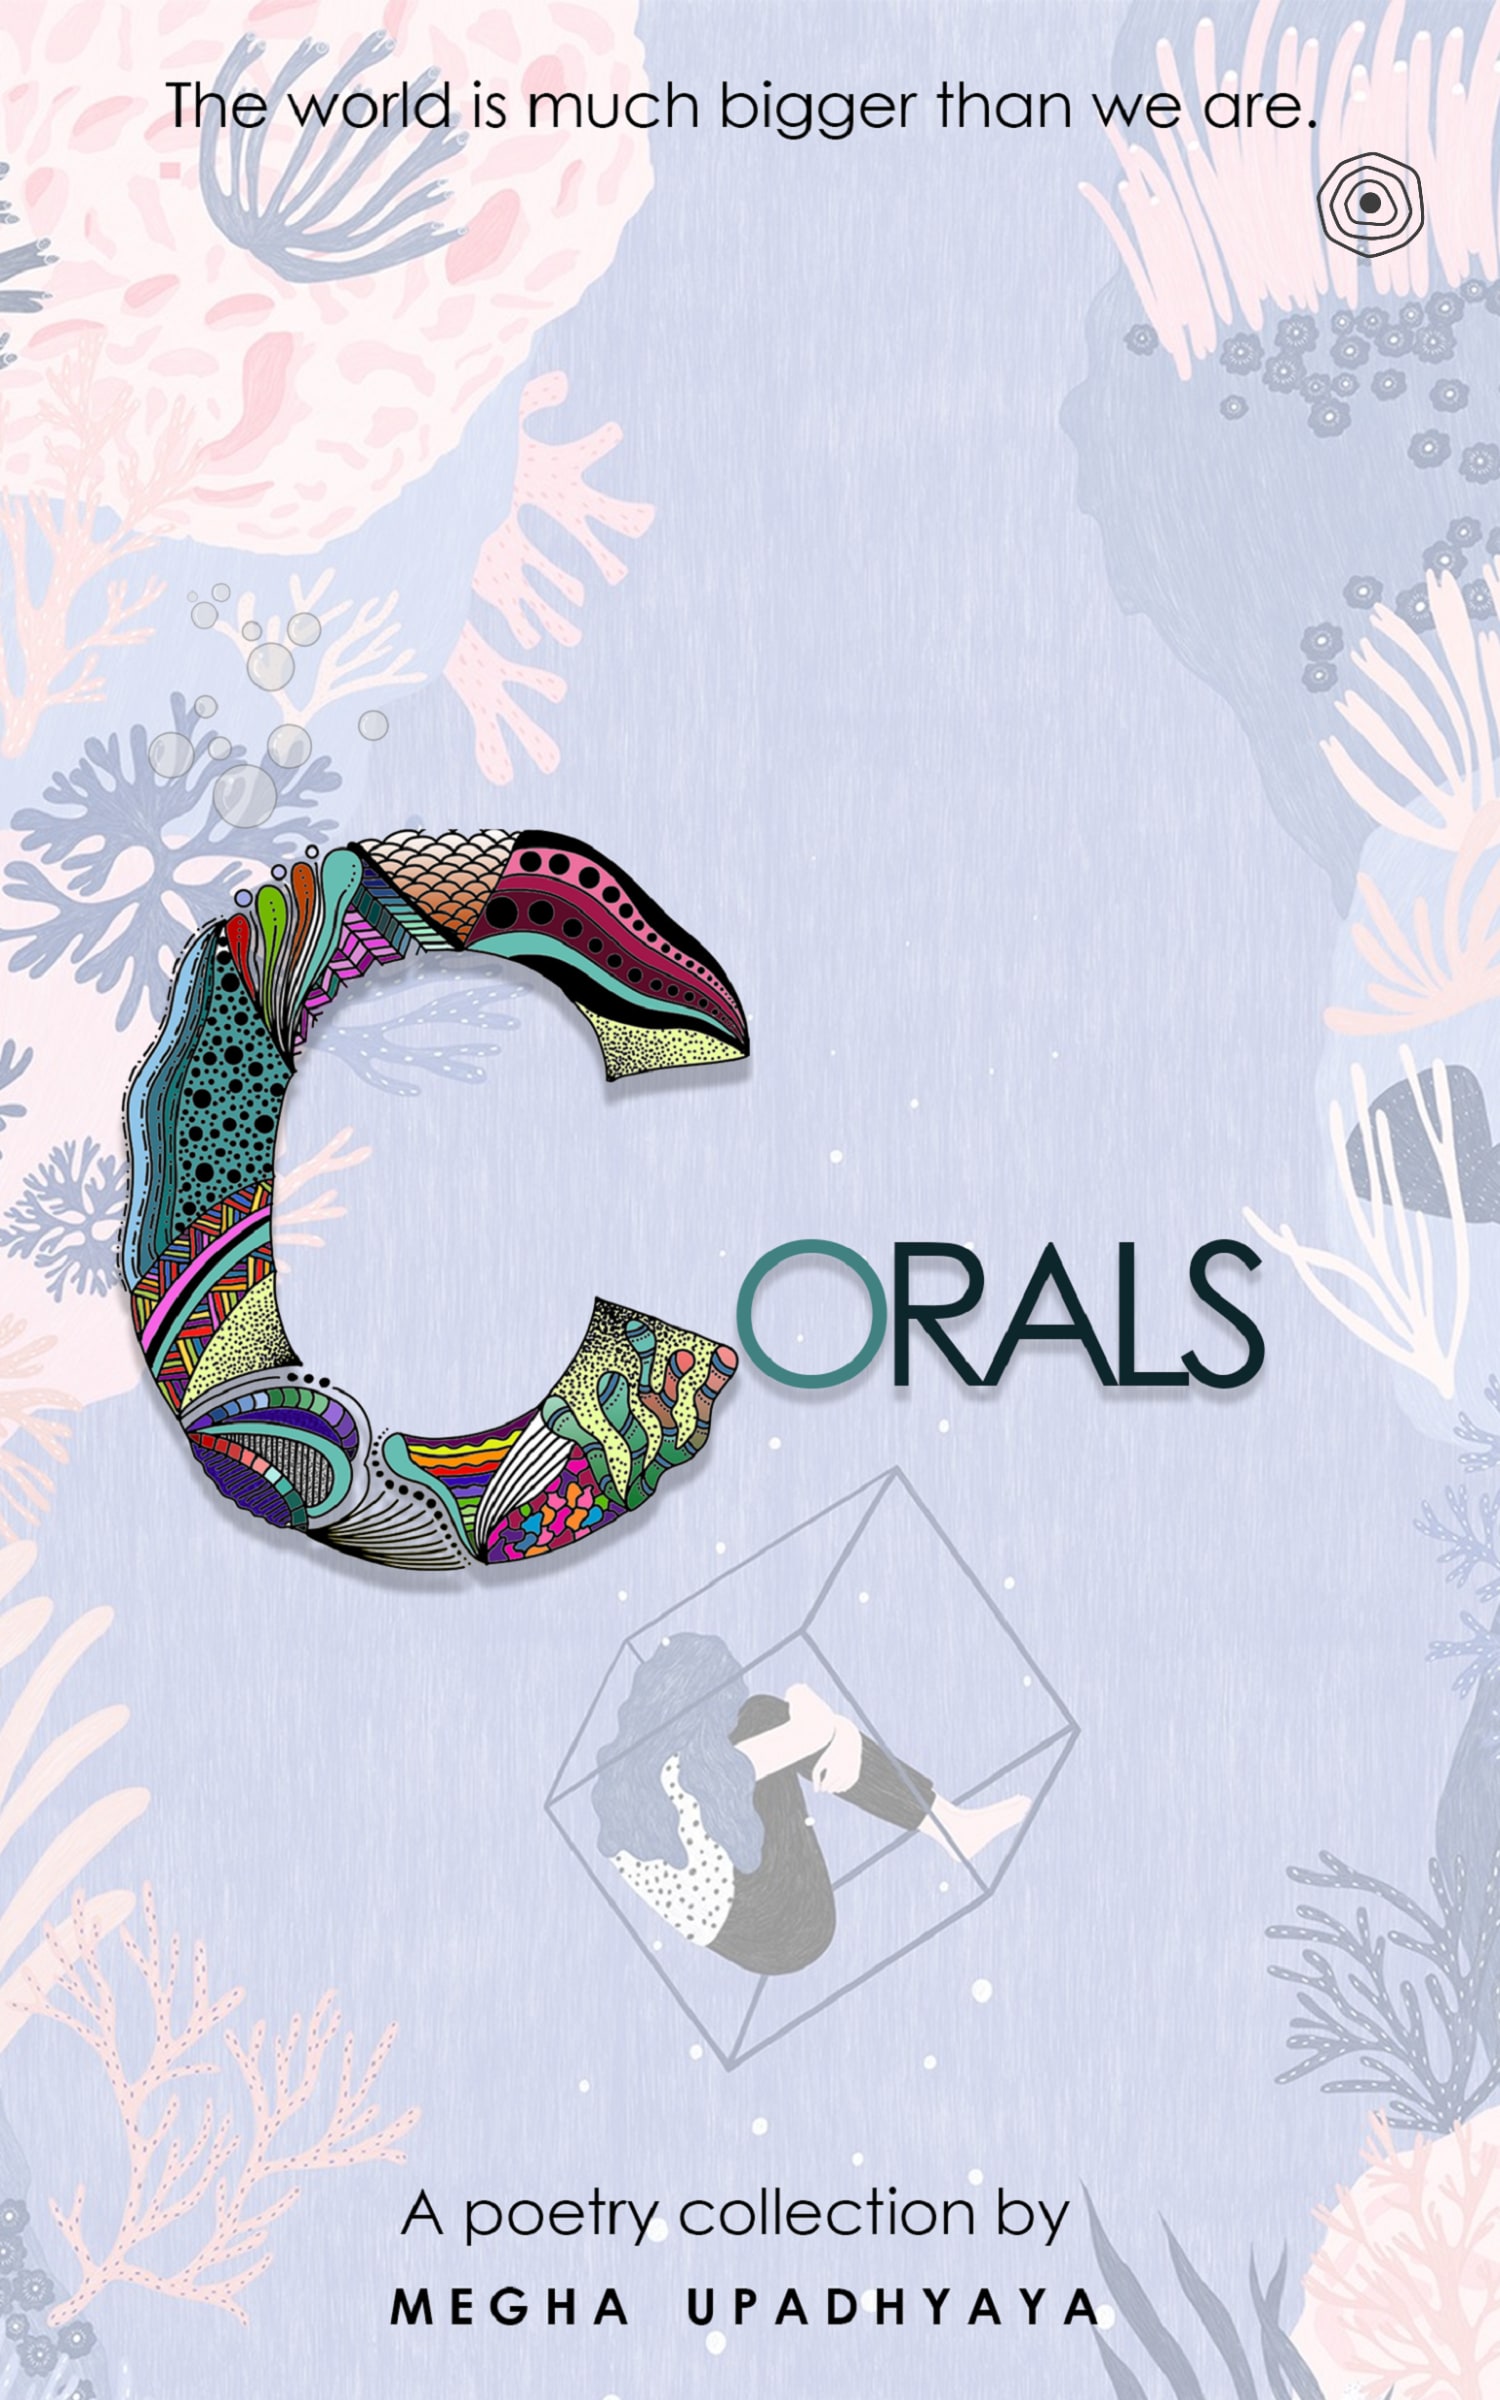 Corals Book Cover